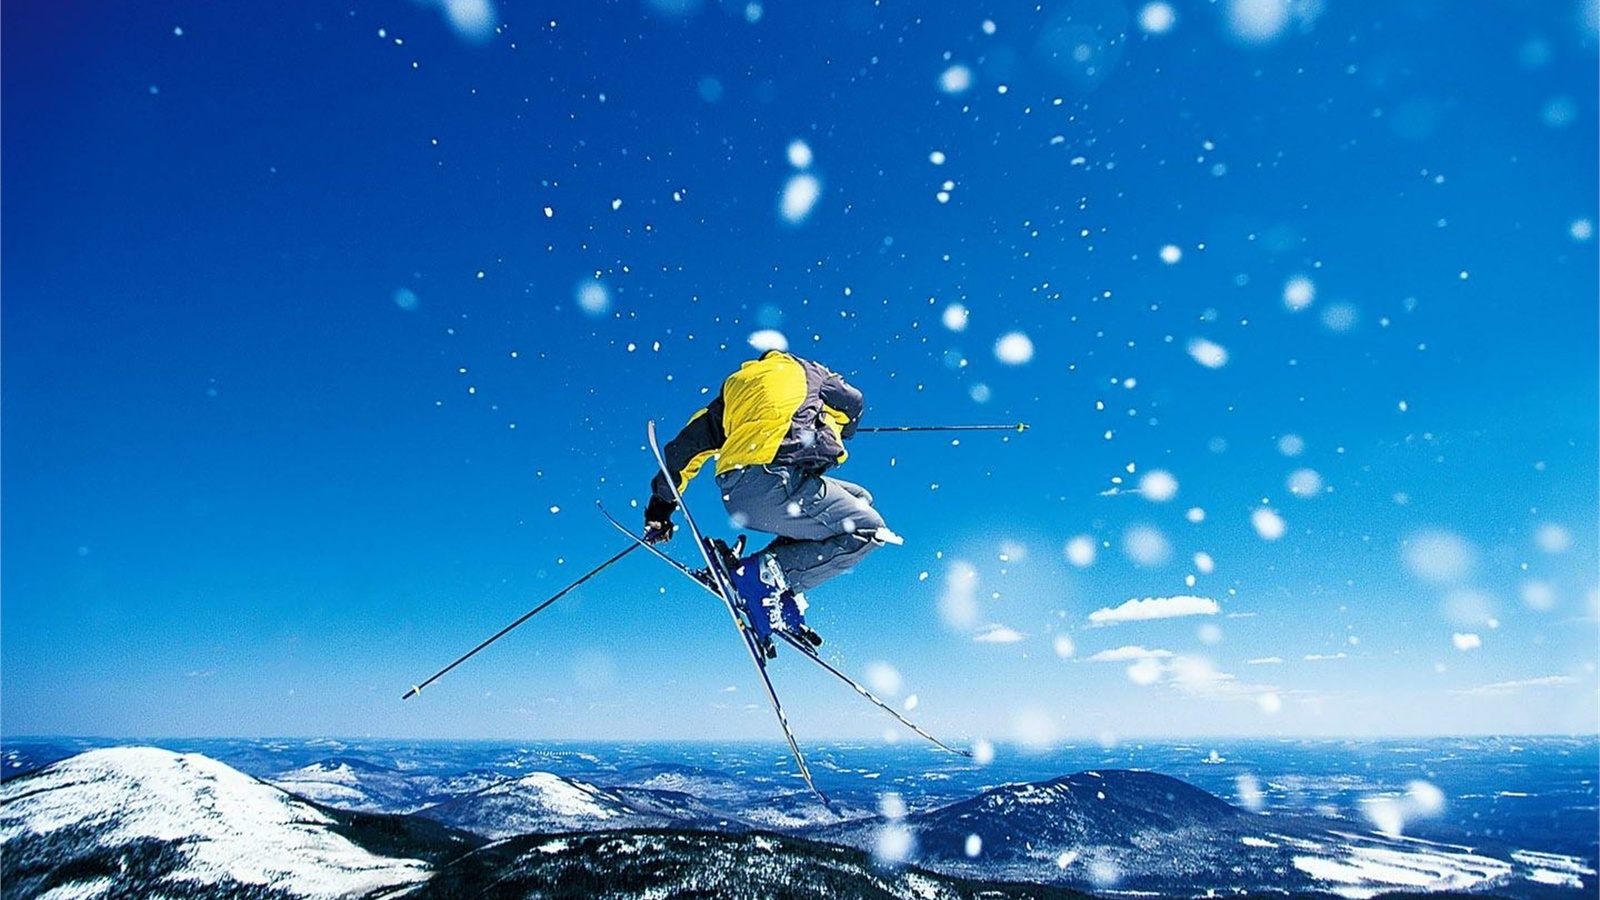 alpine, skiing, sport, jump, snow, mountain